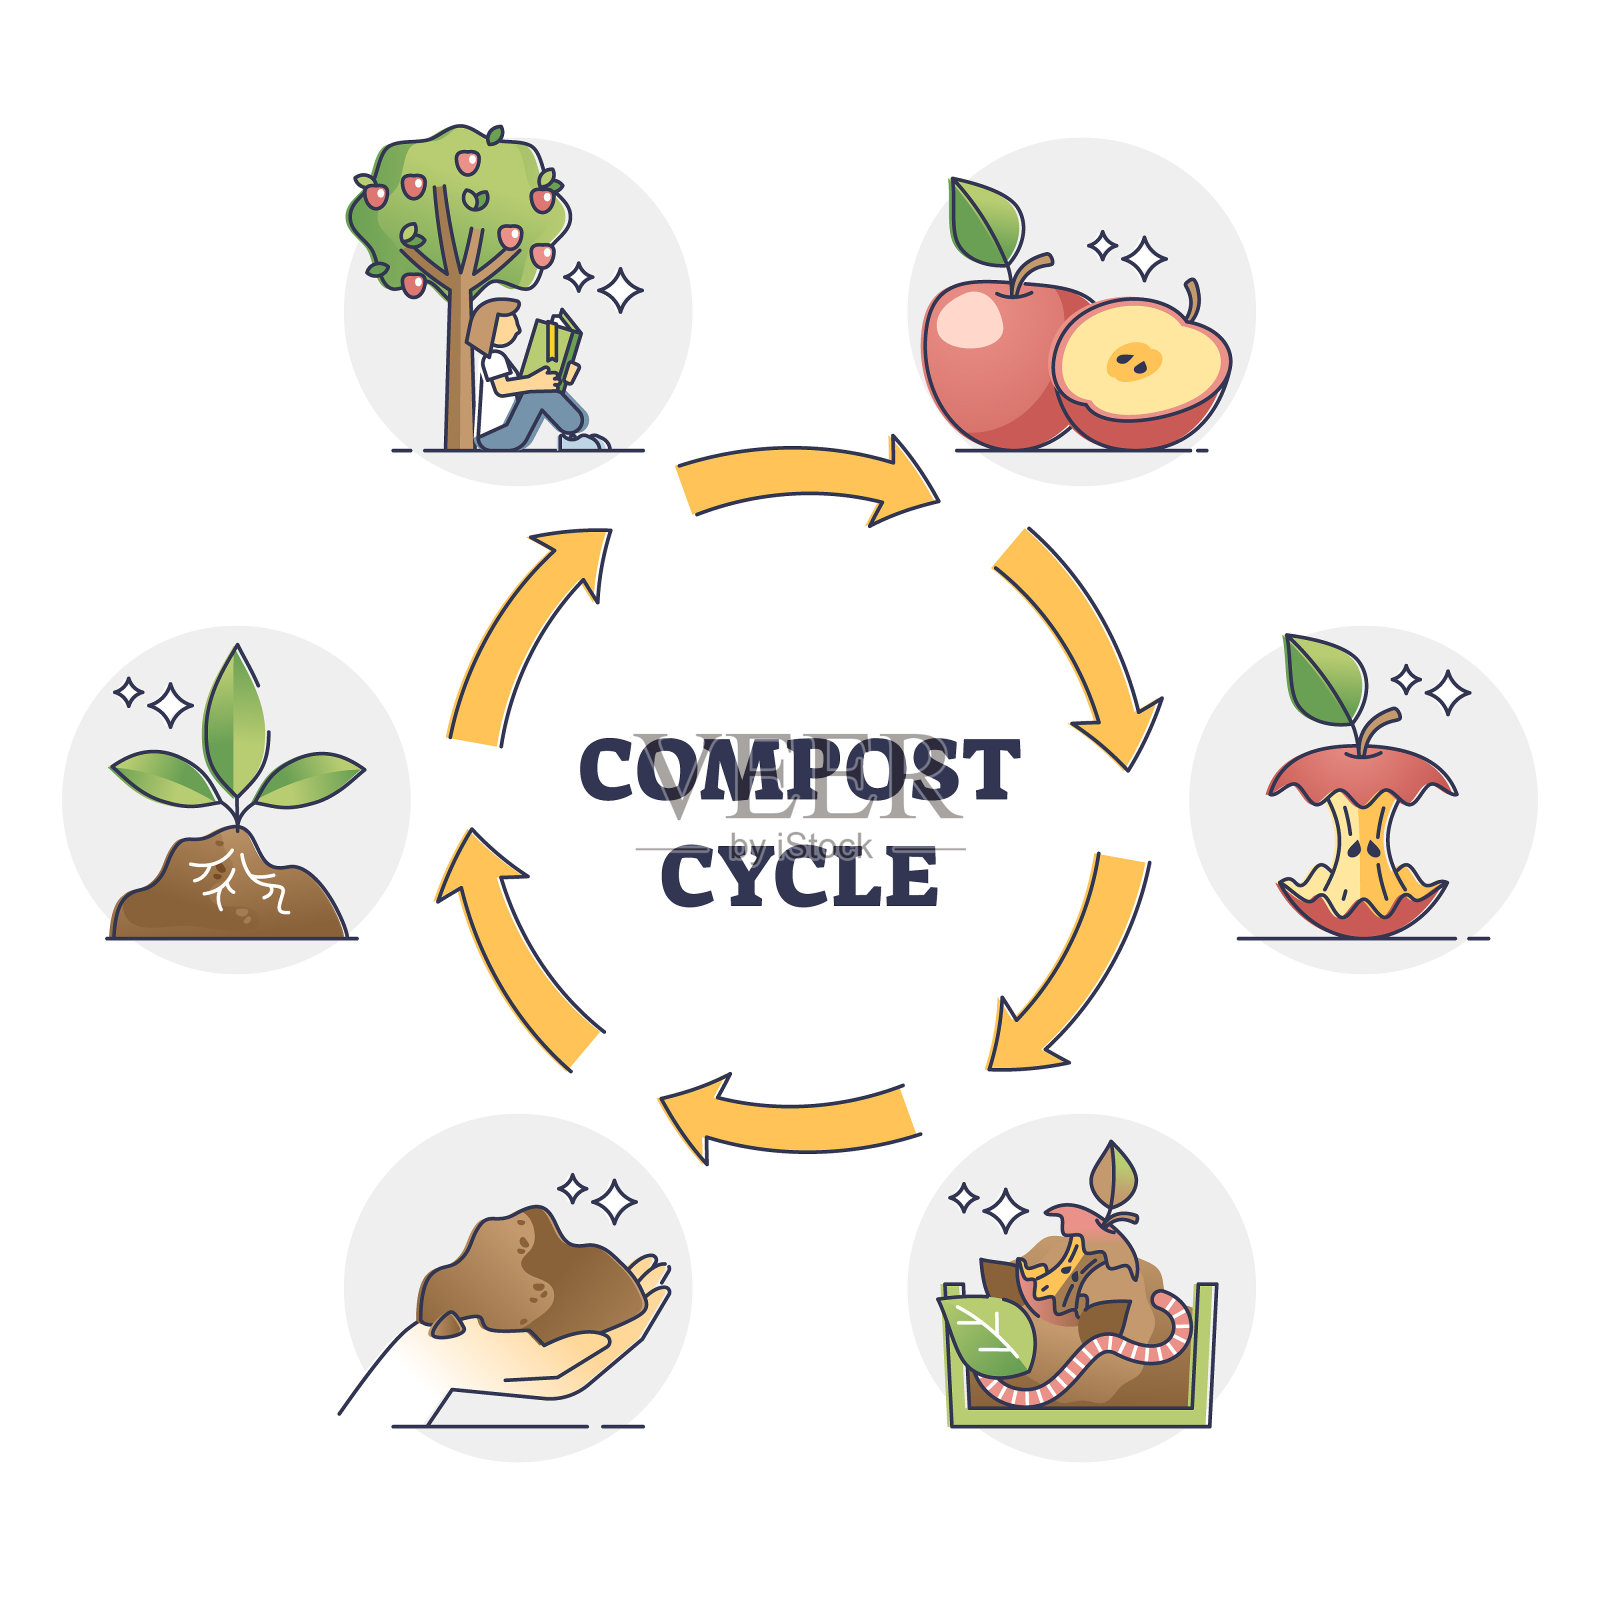 堆肥循环与自然食物垃圾的回收过程大纲图插画图片素材